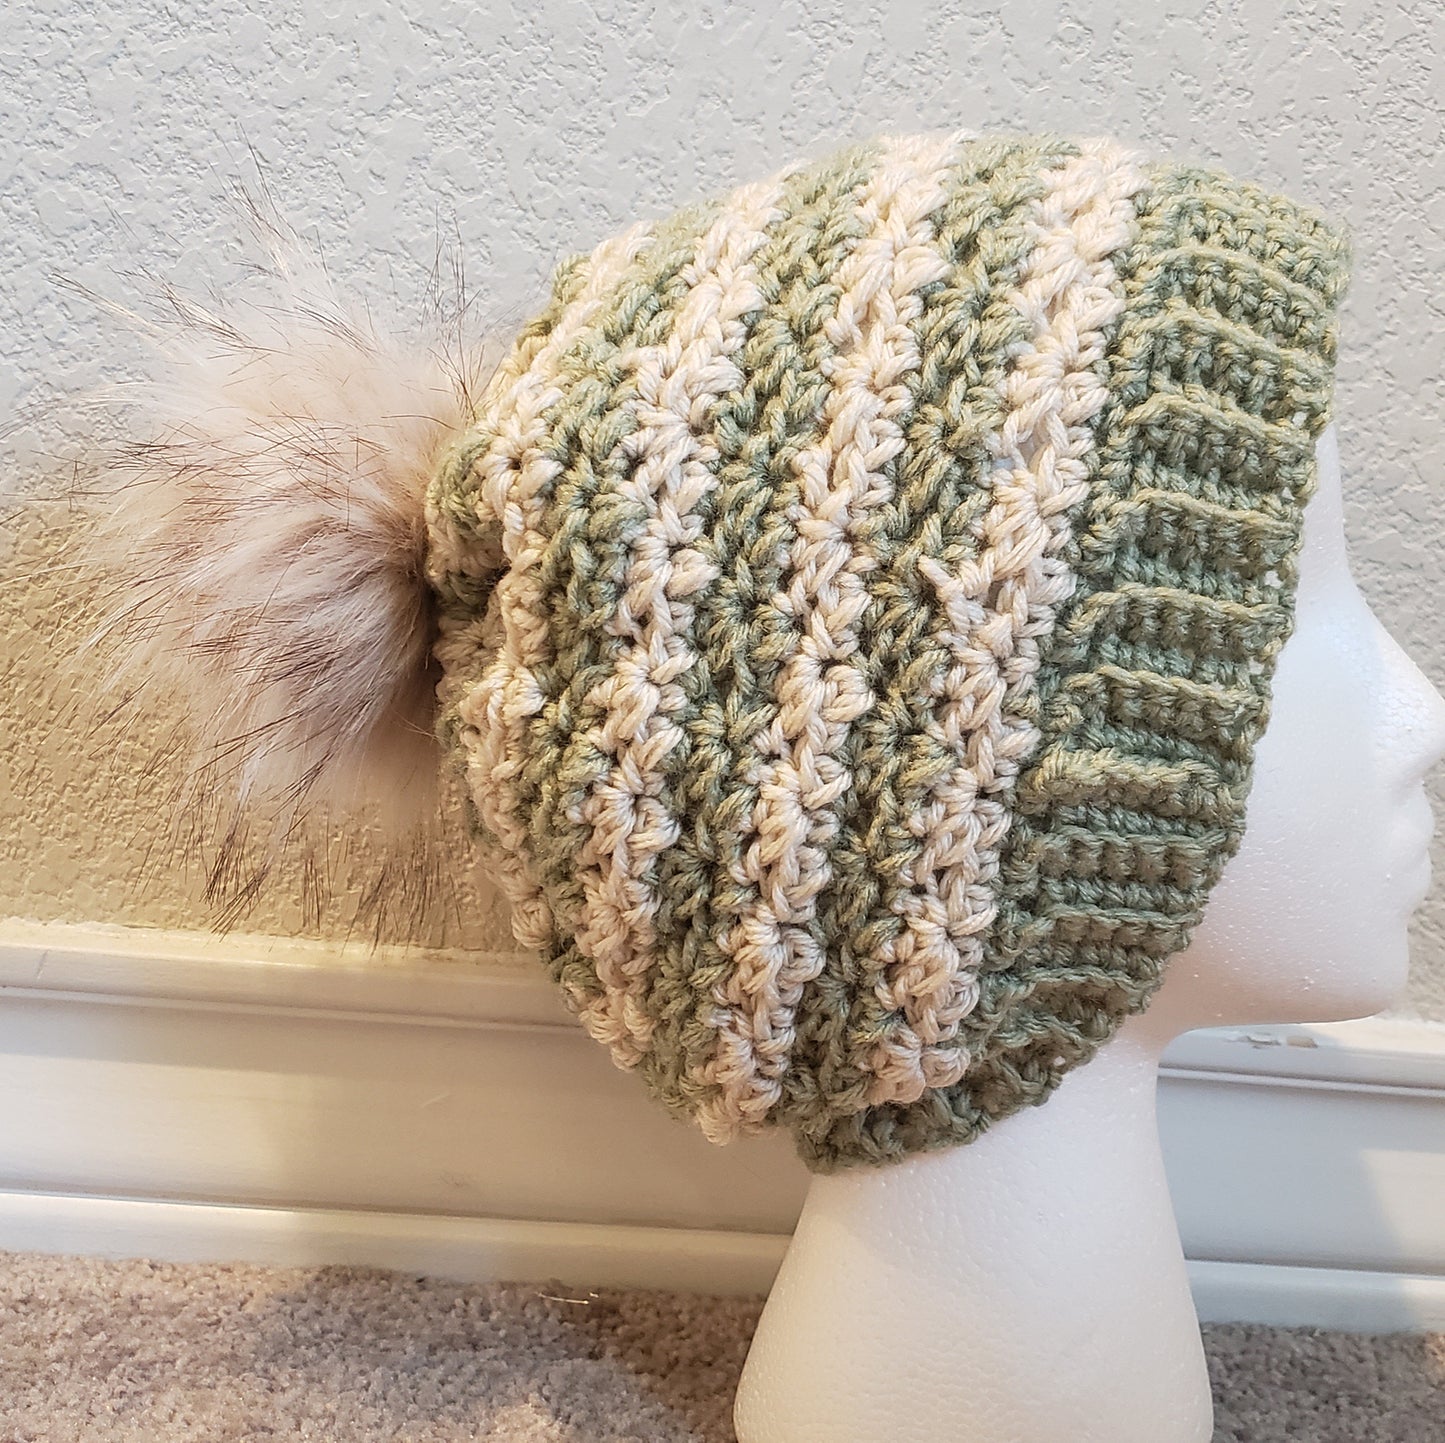 Crochet Pattern: Blooming Hydrangea Hat